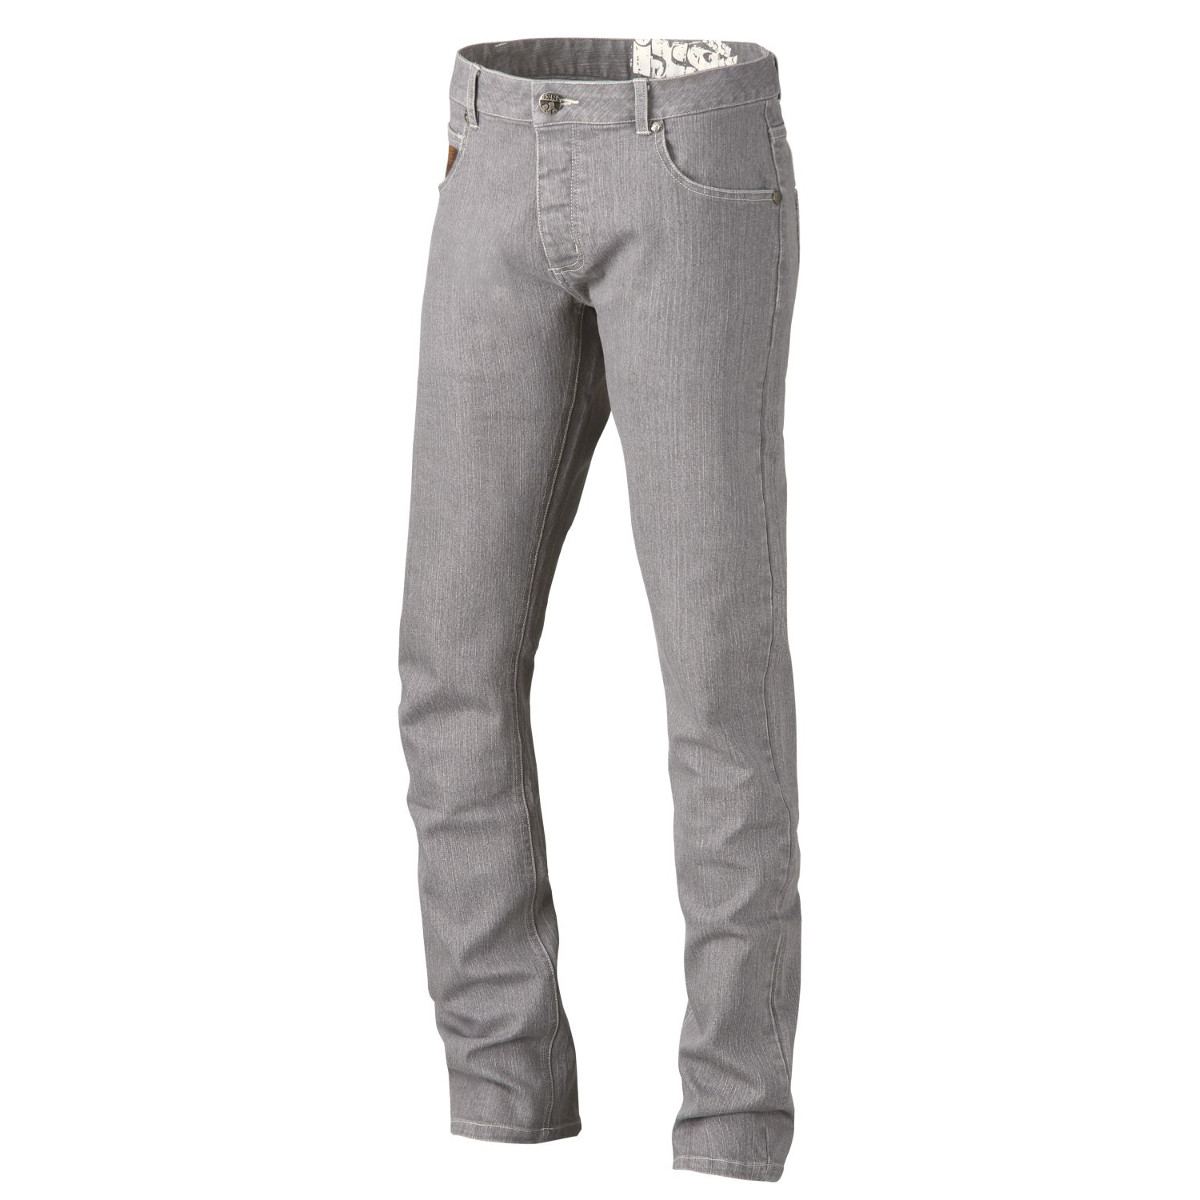 IXS Bike Jeans Modest Grey-Denim